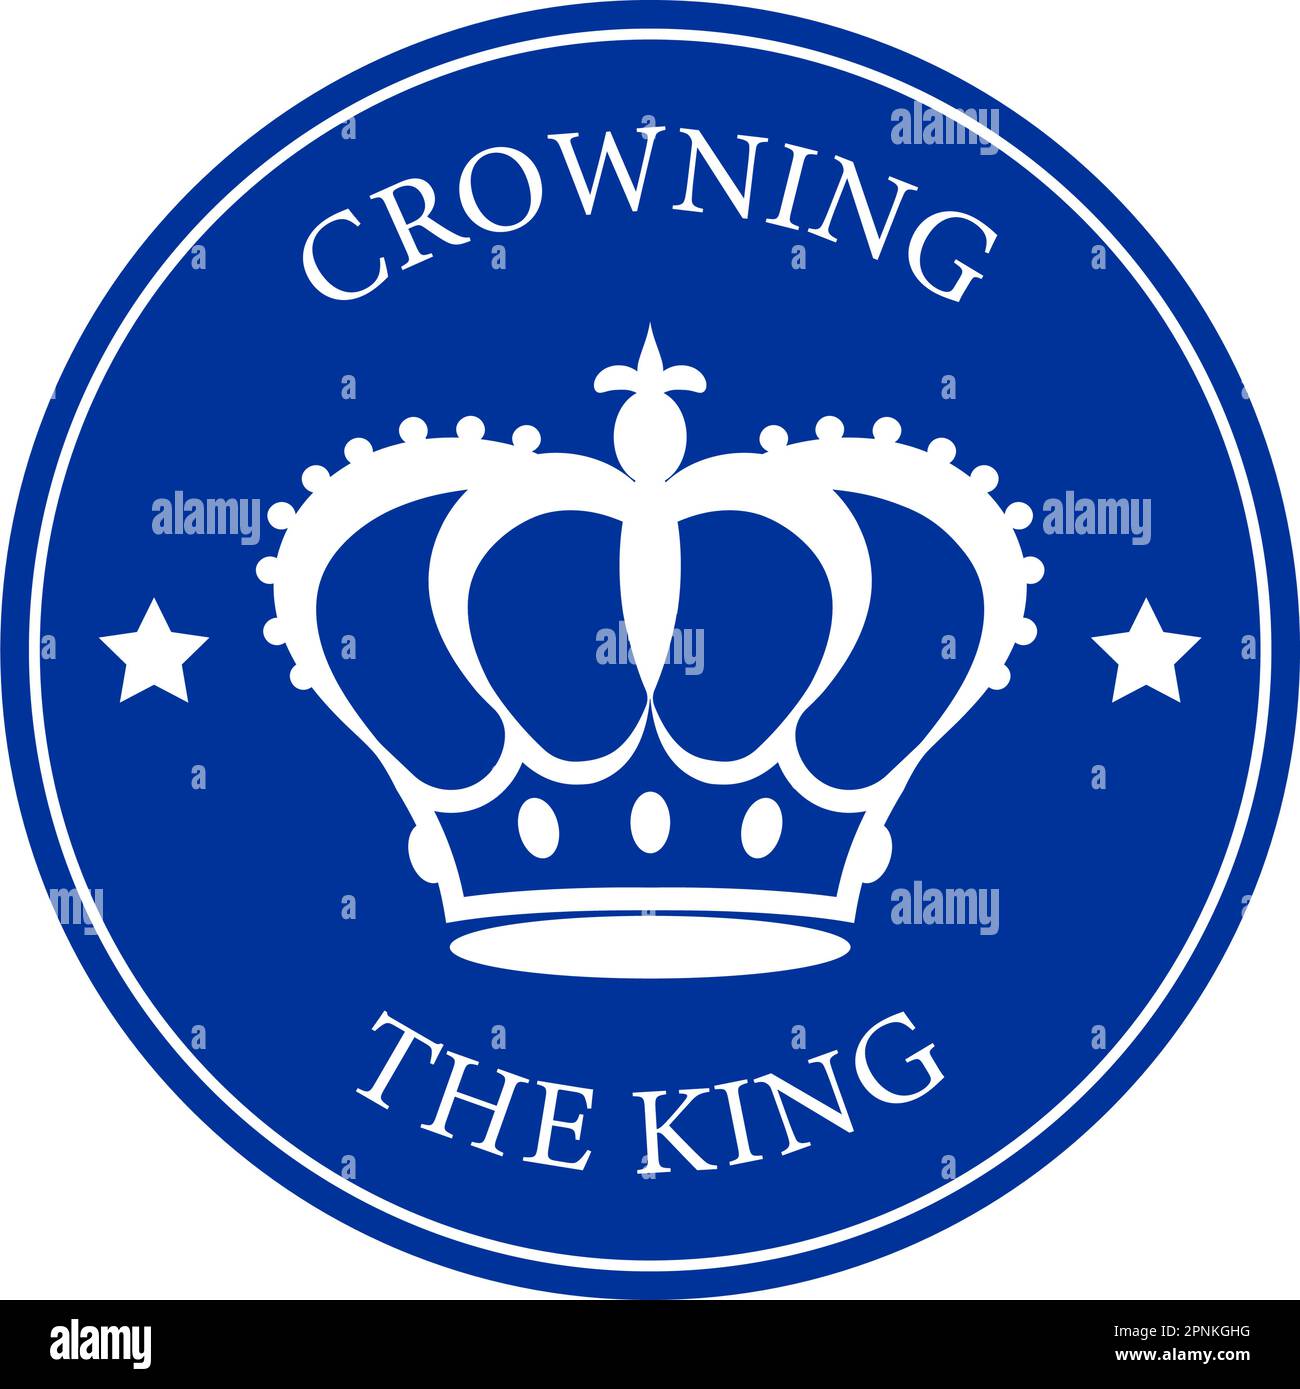 Ein weißer Umriss der königlichen Krone auf rundem blauem Hintergrund, begleitet von den Wörtern Krönung des Königs in moderner Schrift. Minimalistisches Design. Stock Vektor